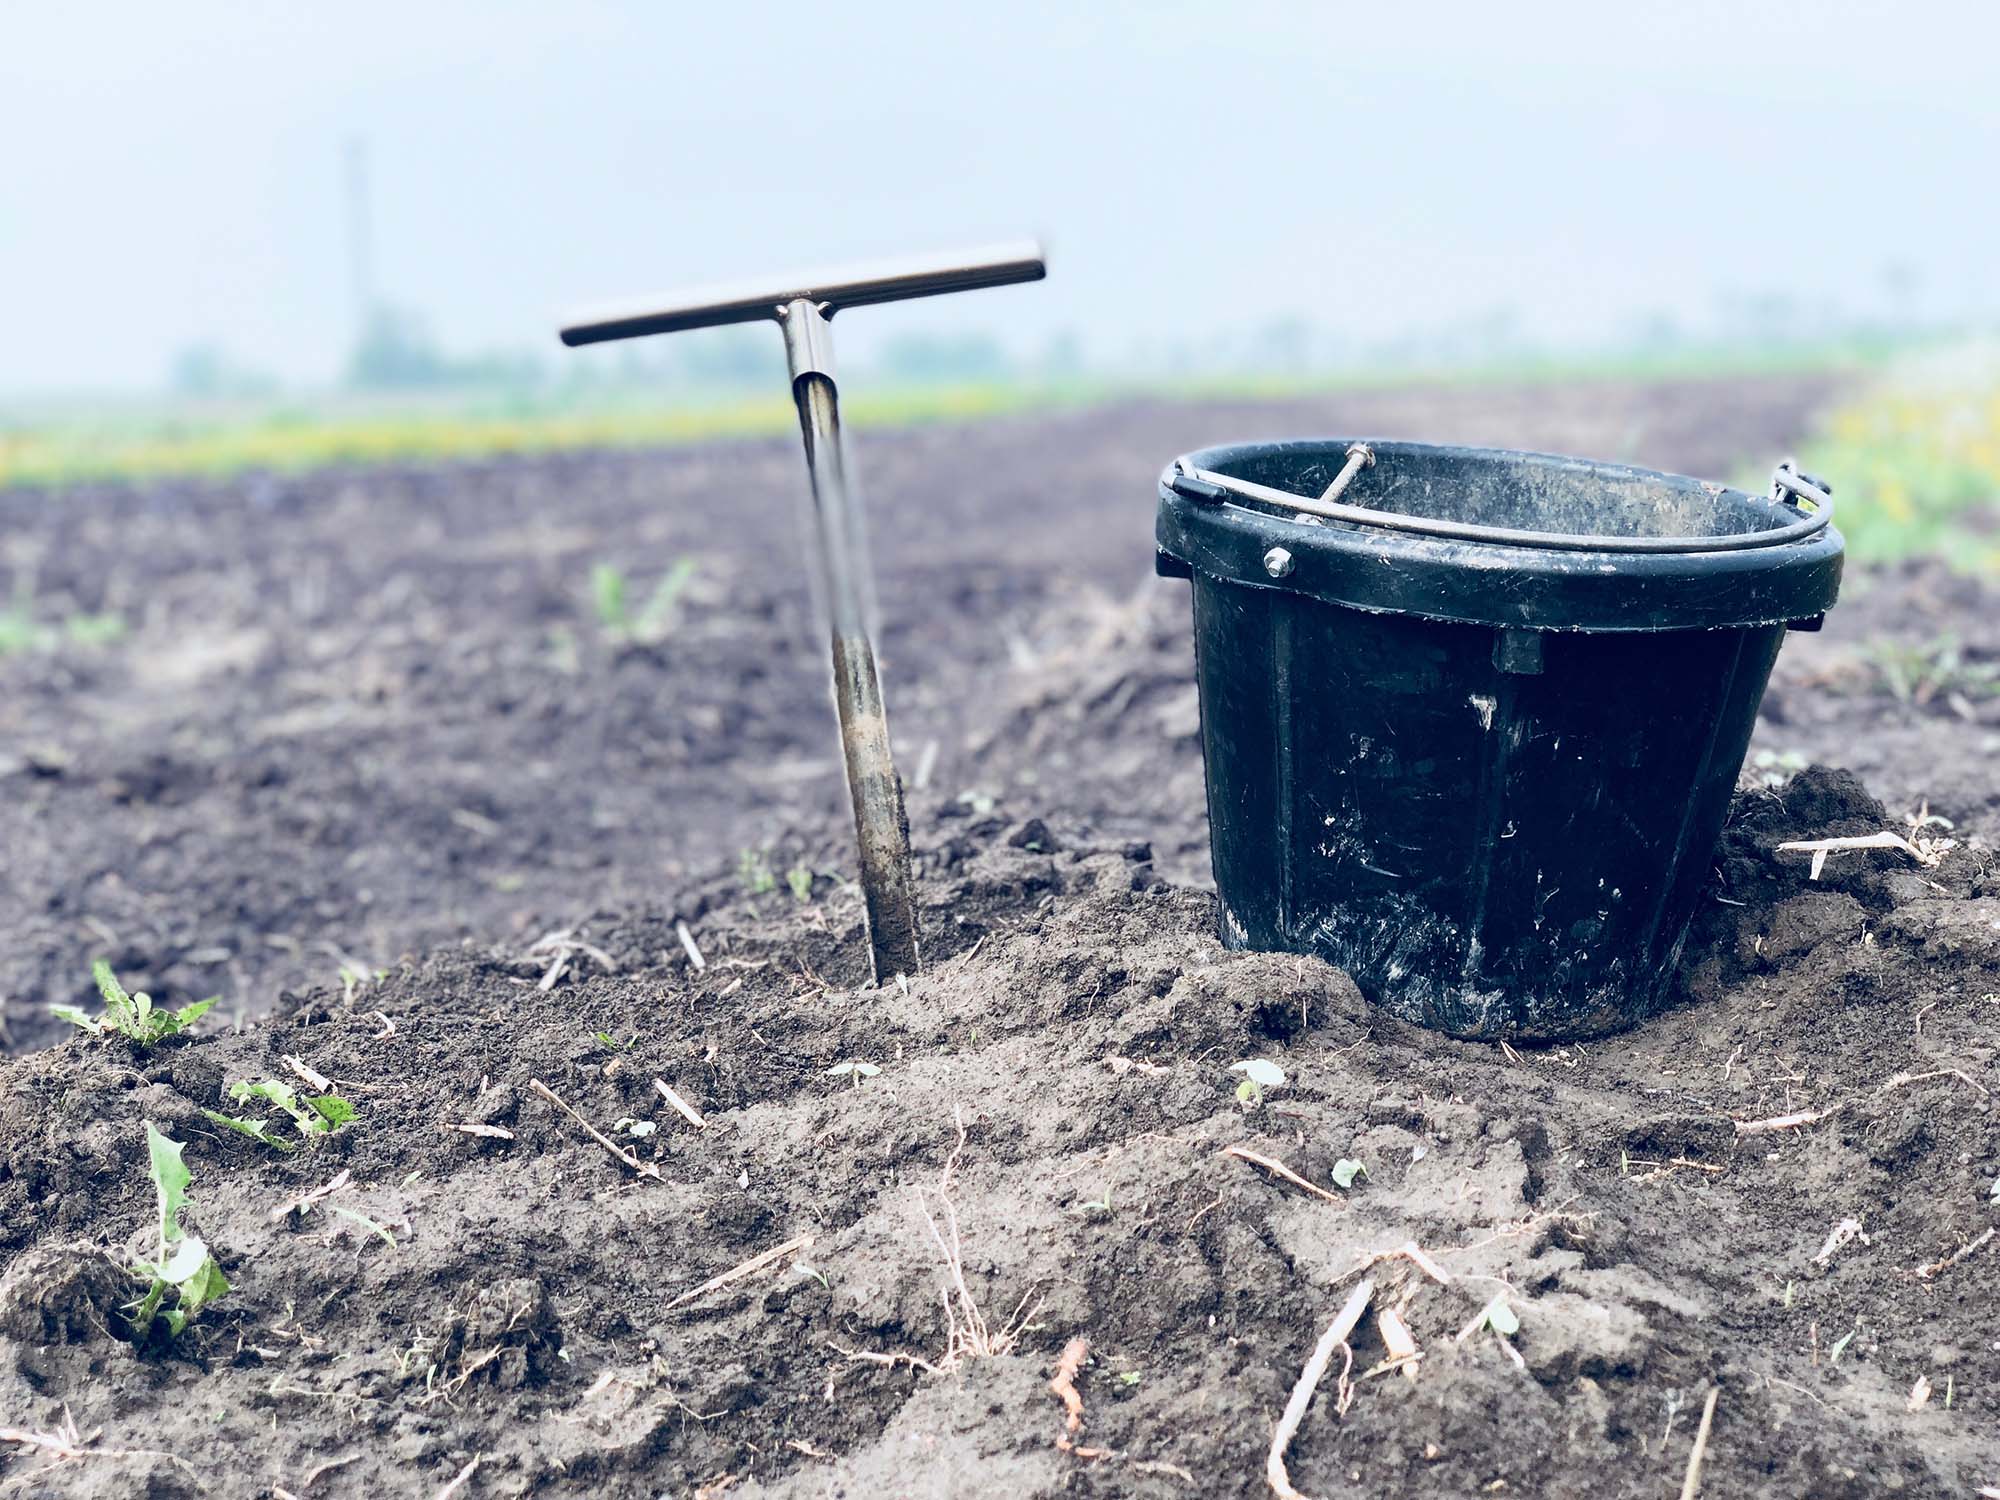 Soil Sampling is vital in understanding how to keep our soil healthy.